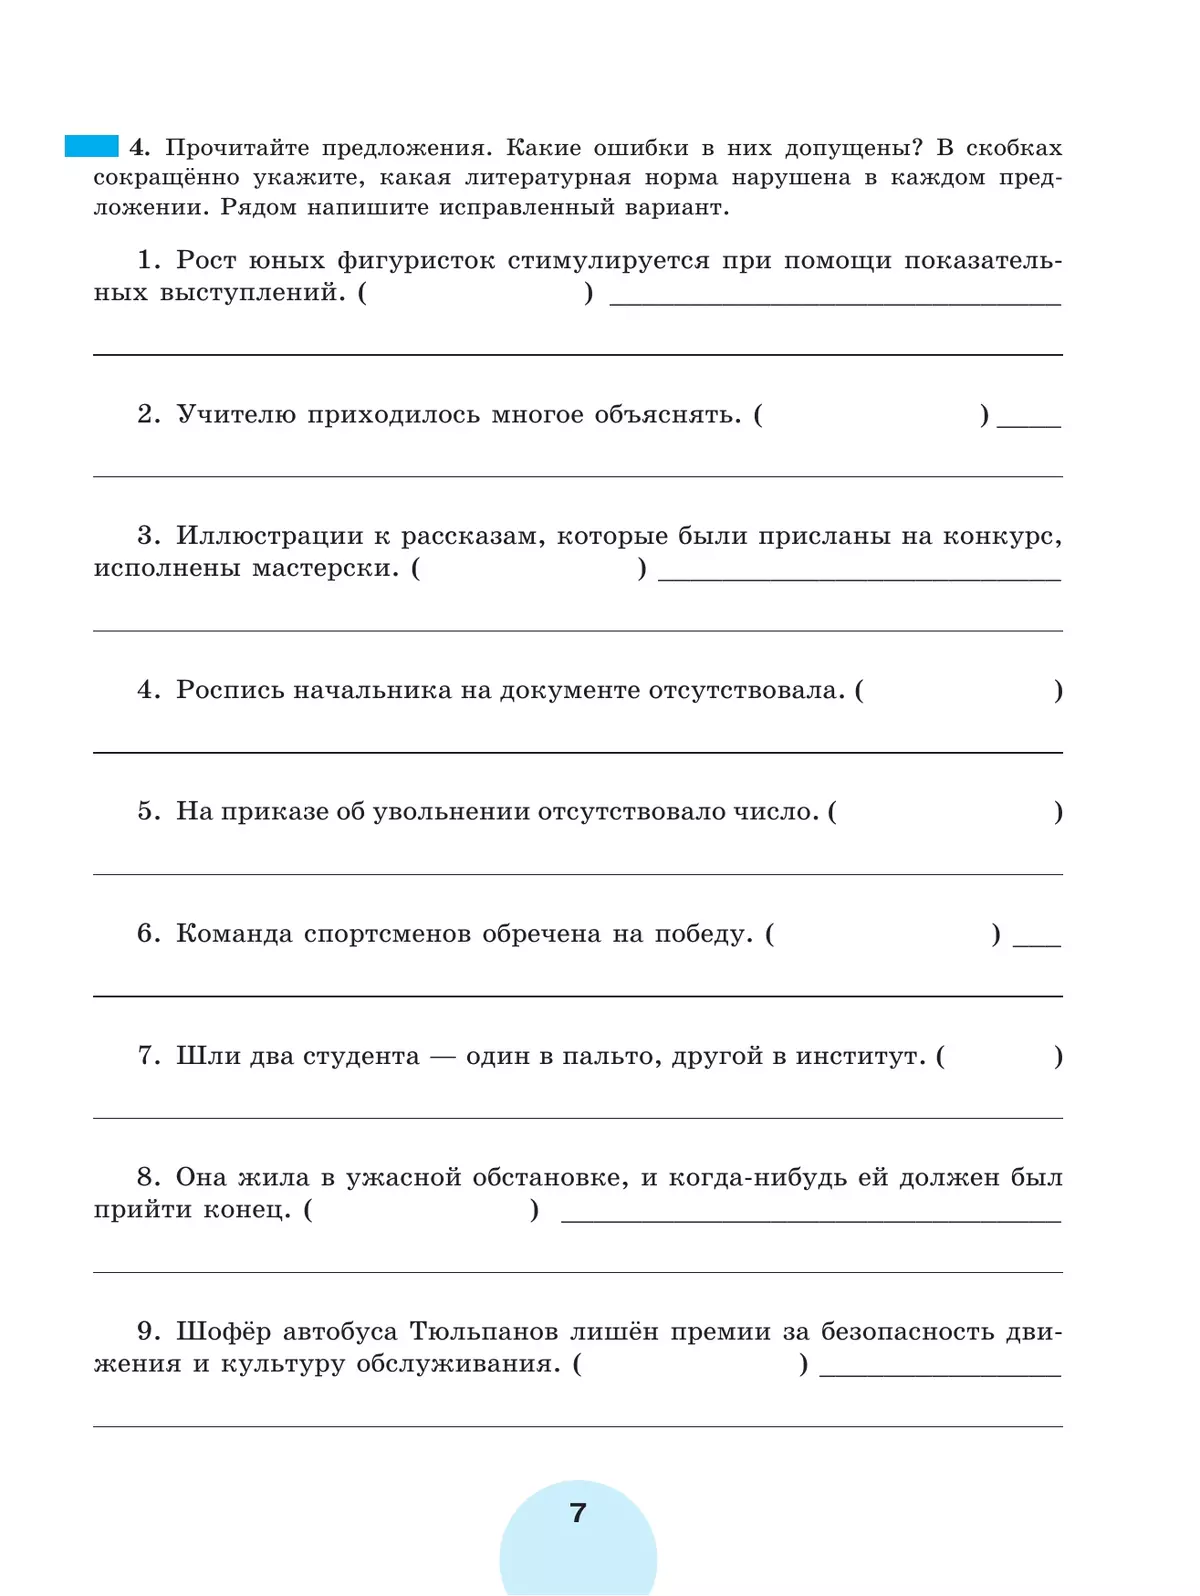 Русский язык. Рабочая тетрадь. 8 класс. В 2 ч. Часть 1 2